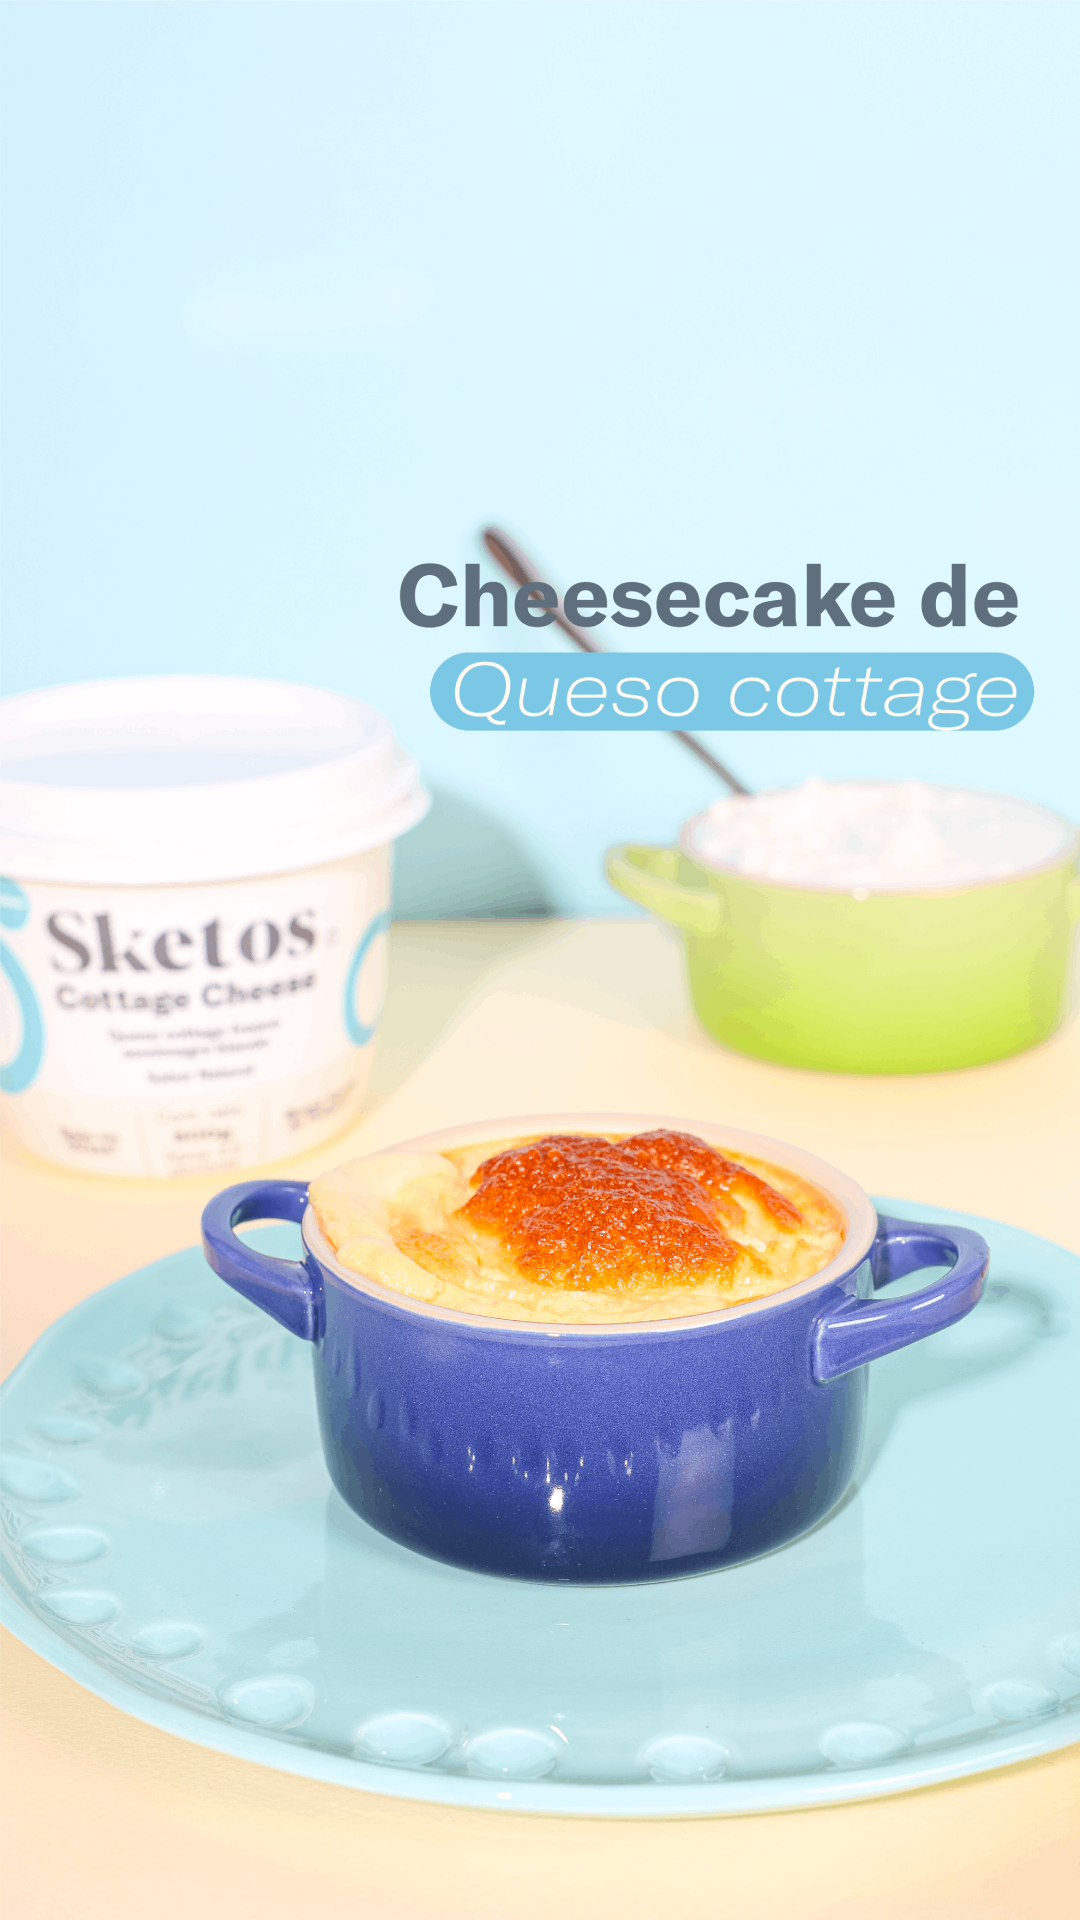 Receta Sencilla de Cheesecake de Queso Cottage: Delicia Nutritiva